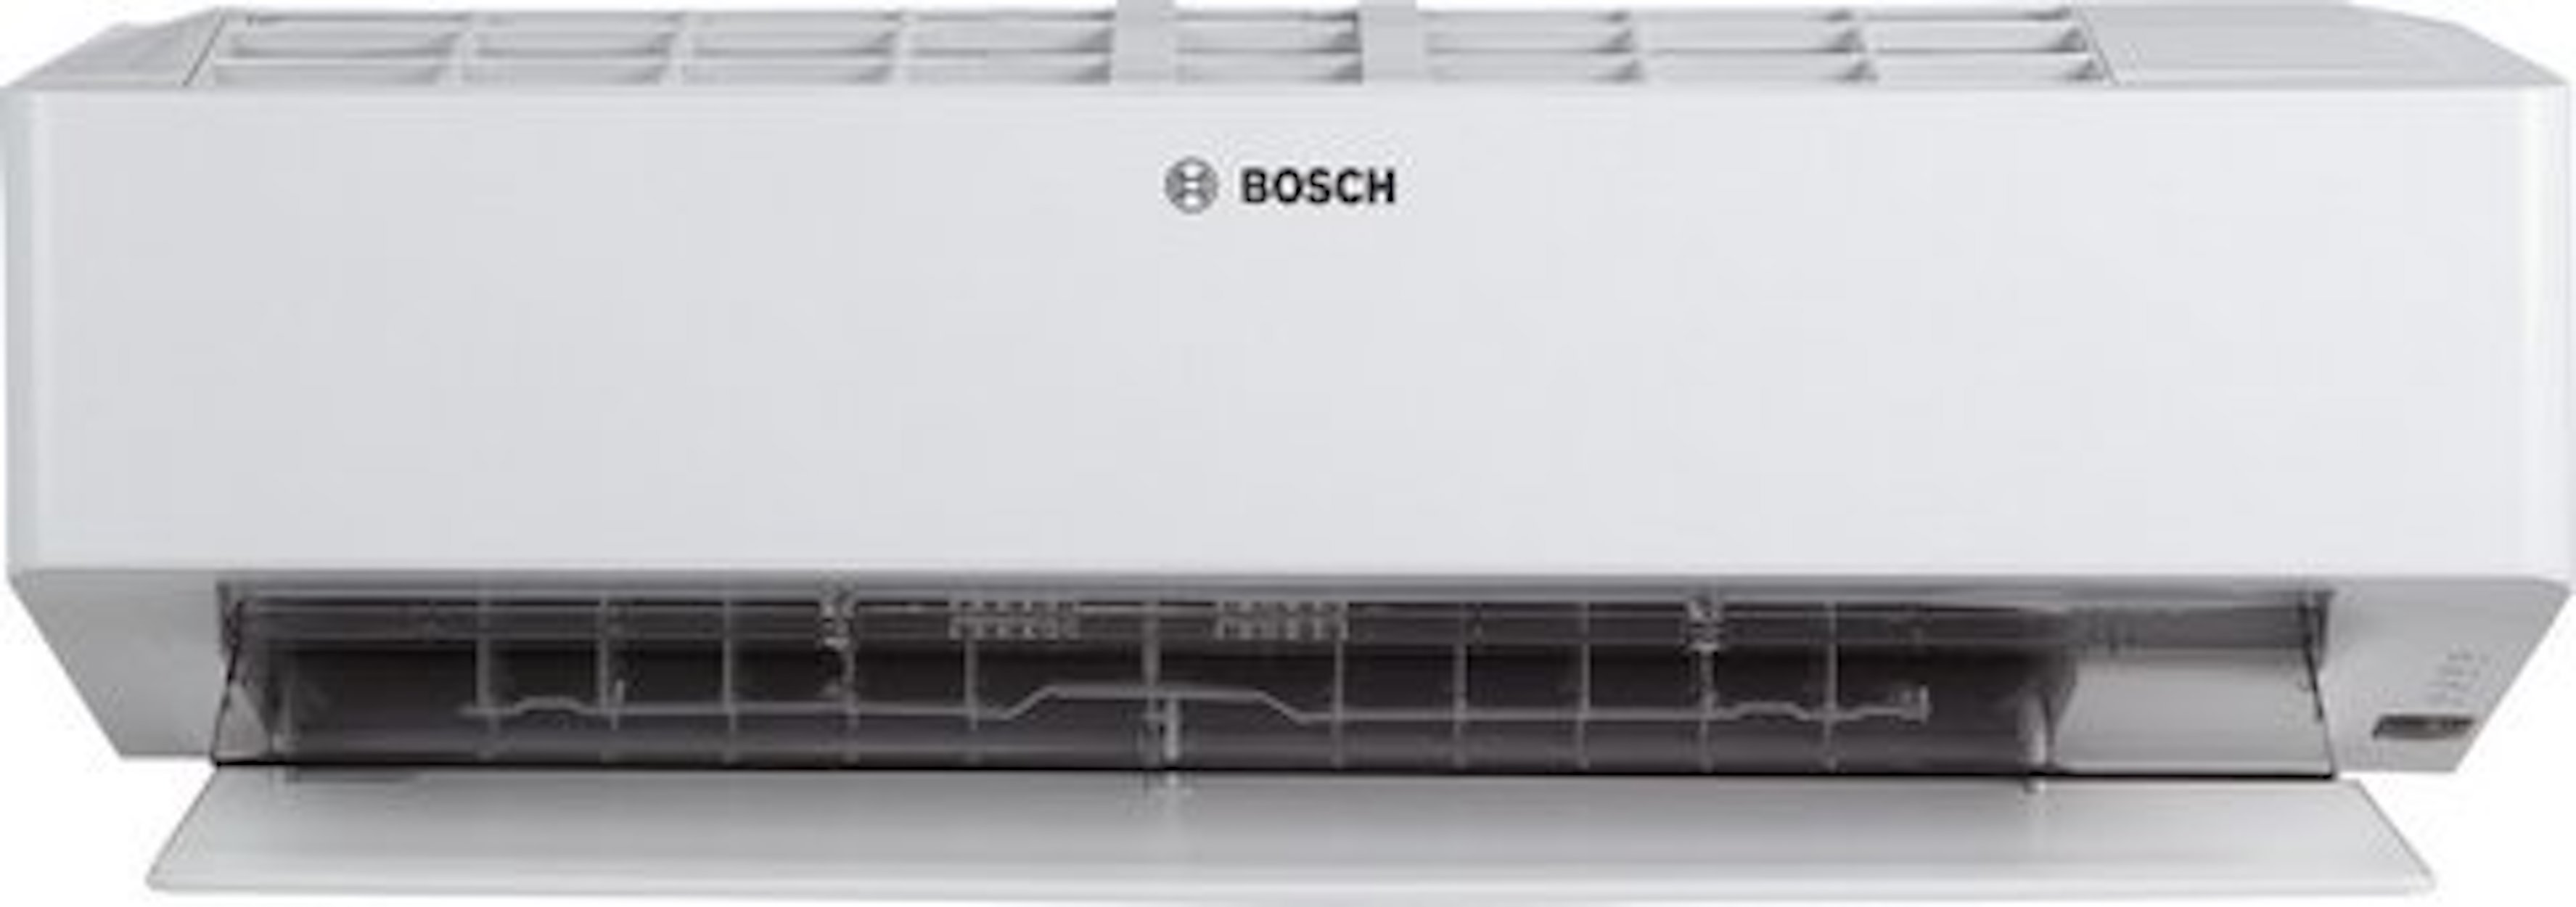 BOSCH Klimagerät CL6000i-W 25 E, Split Inneneinheit, 3,5 kW, Coanda Air Flow